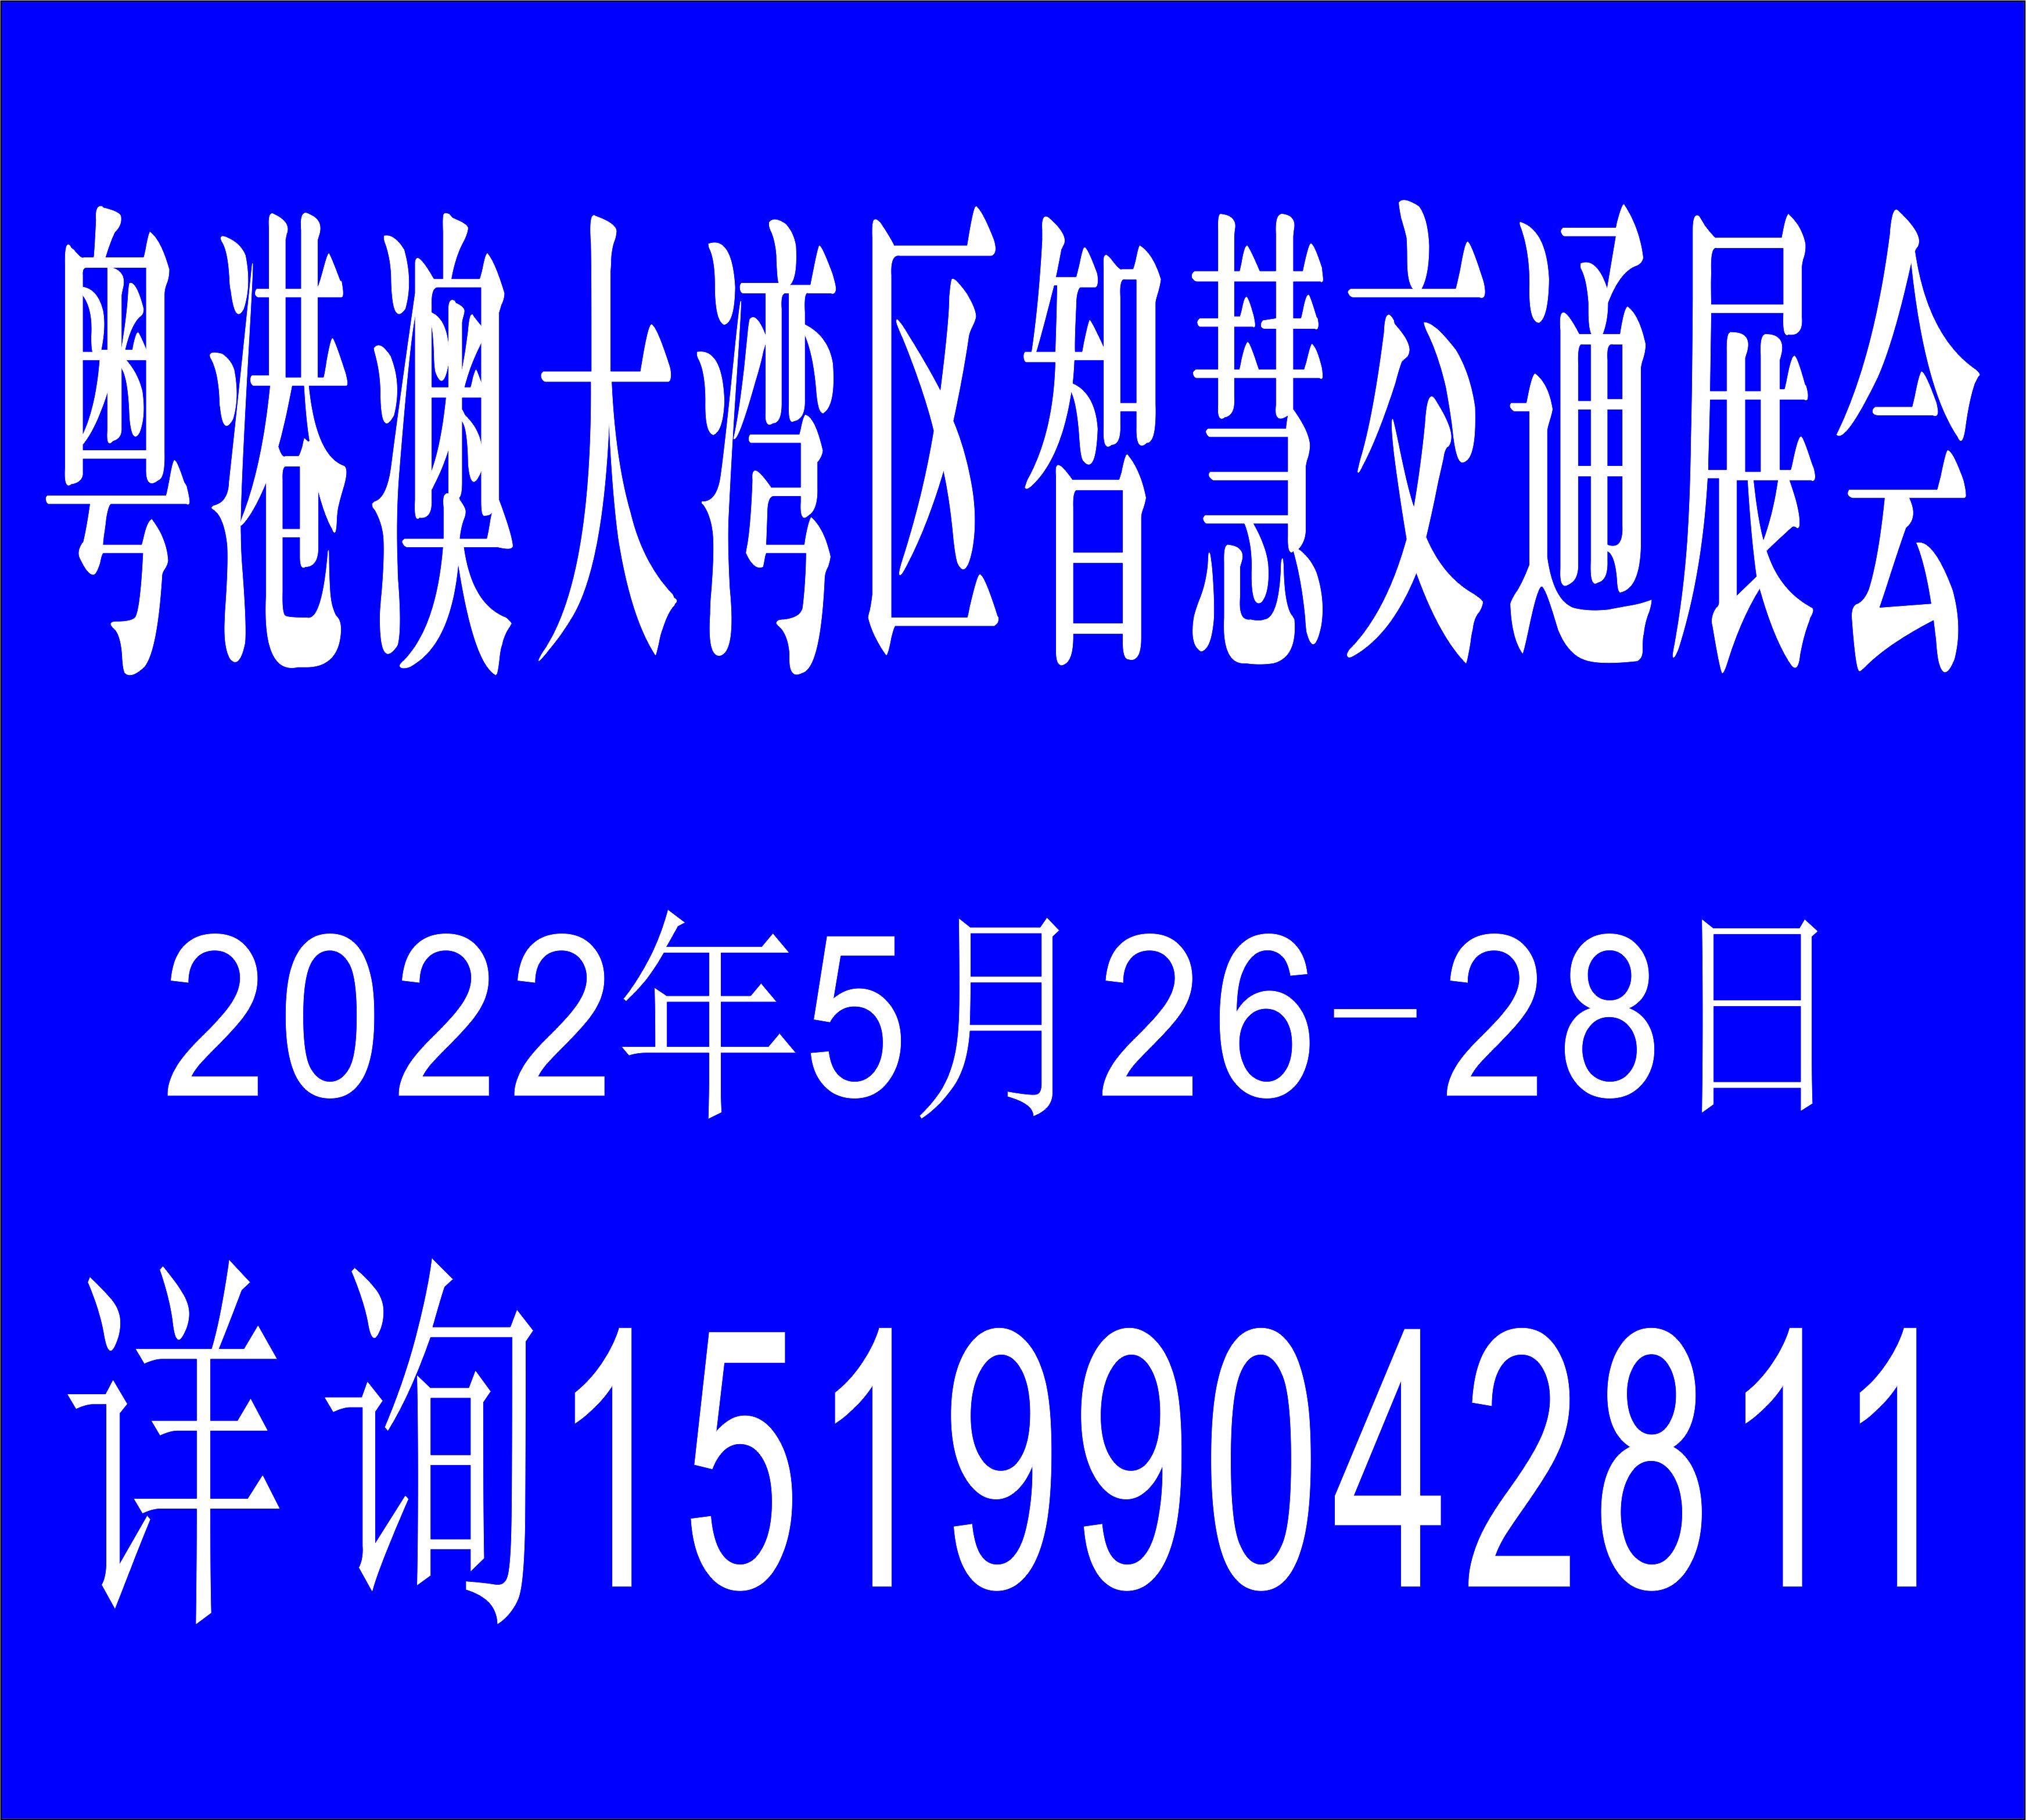 2022年5月26日广州（粤港澳大湾区）交通设施展览会